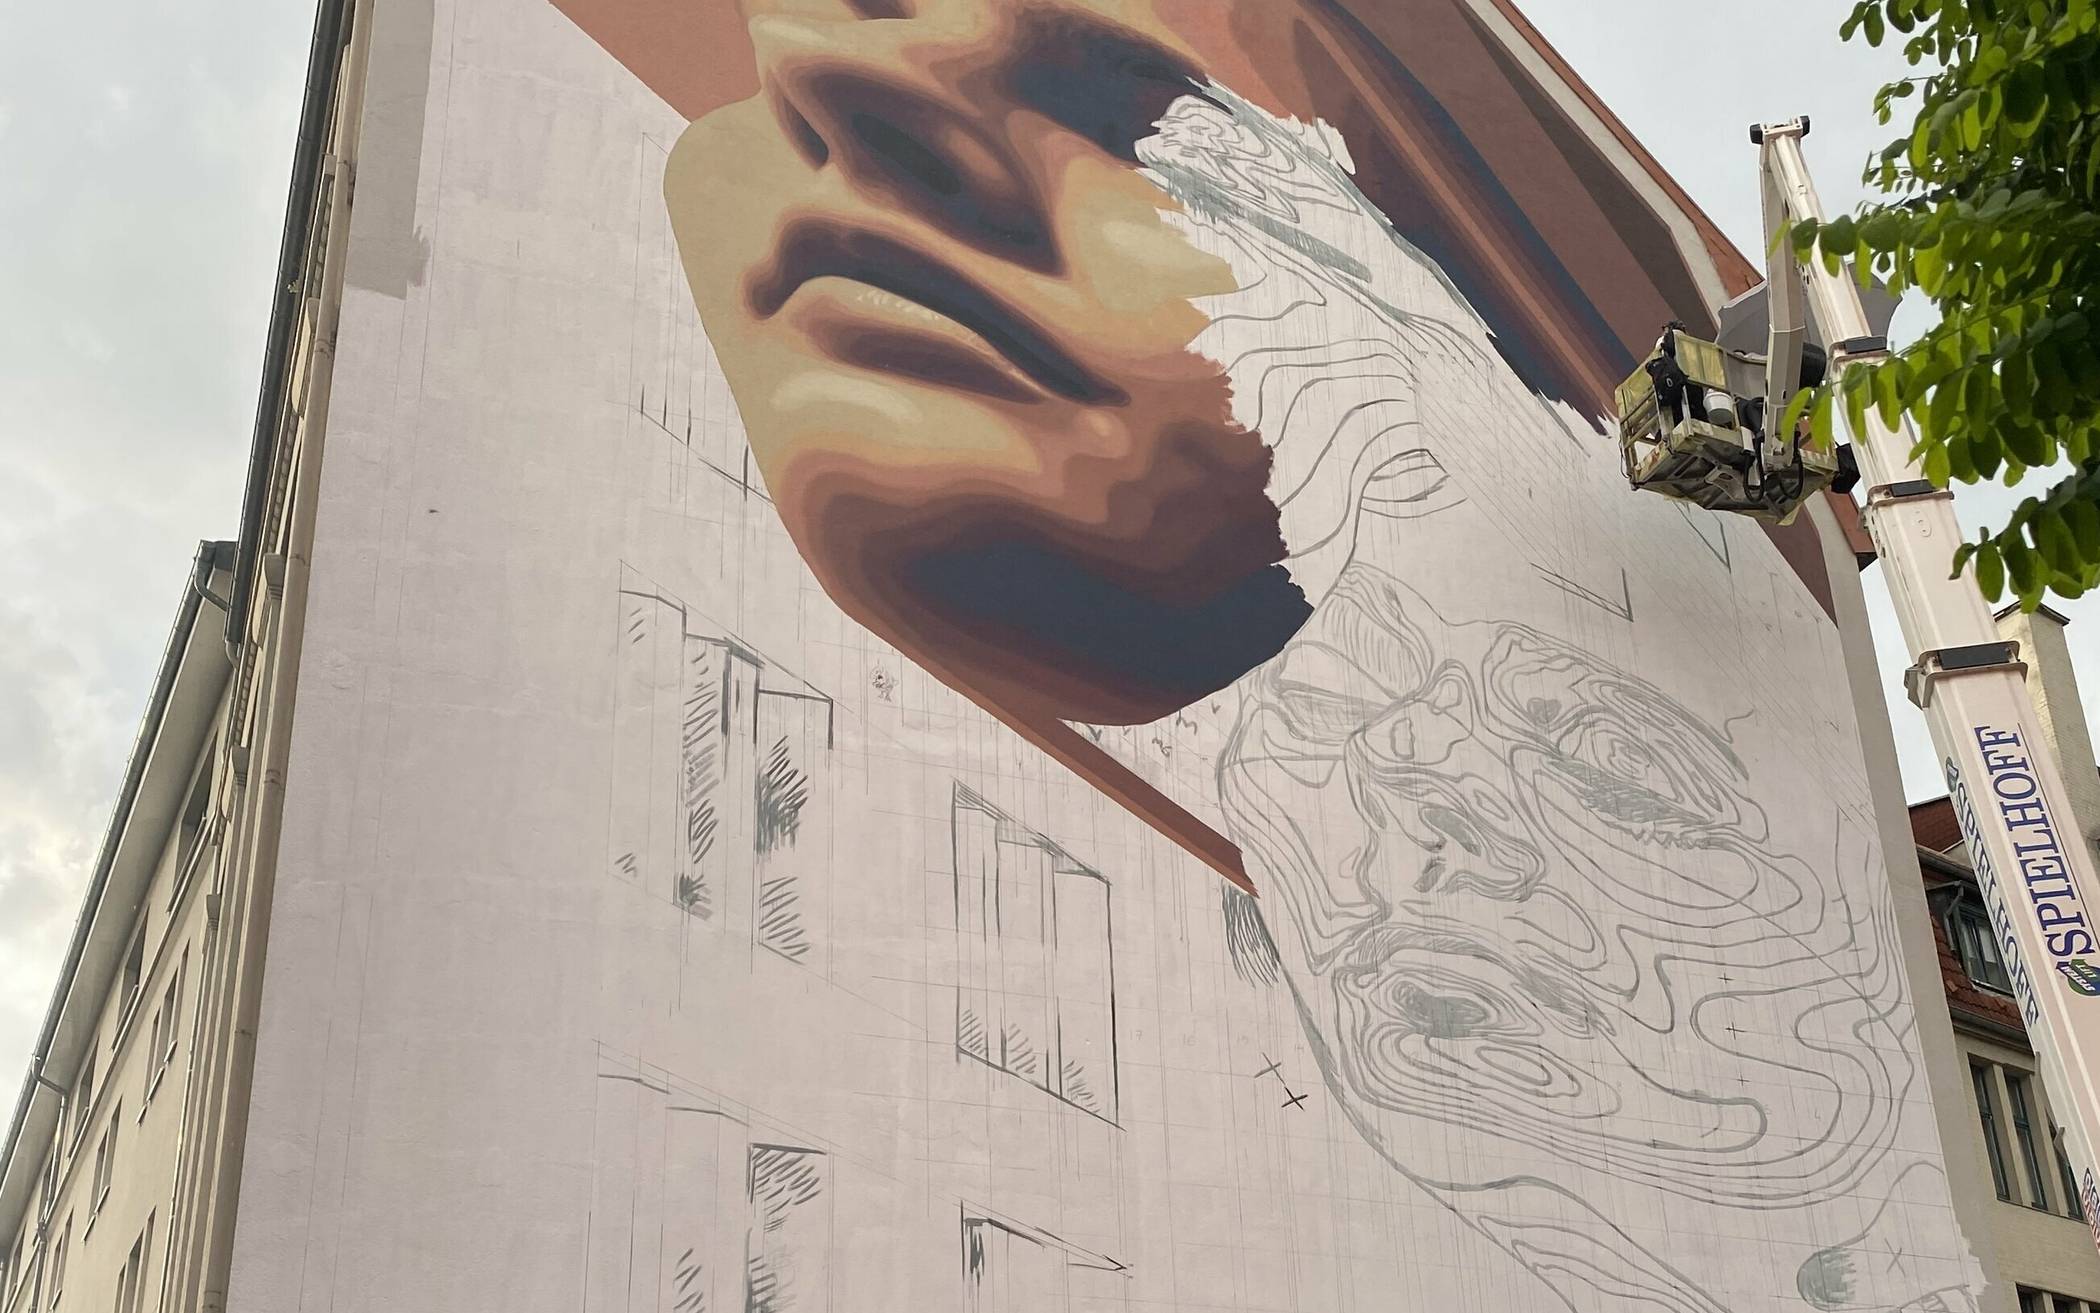 An der Hofaue 49 gegenüber der Baumschen Fabrik ist zurzeit das Künstlerinnen-Duo Medianeras aus Barcelona aktiv und bemalt die linke Seite der dortigen Doppel-Fassade mit einem gigantischen 3D-Mural, das zwei Köpfe zeigen wird.